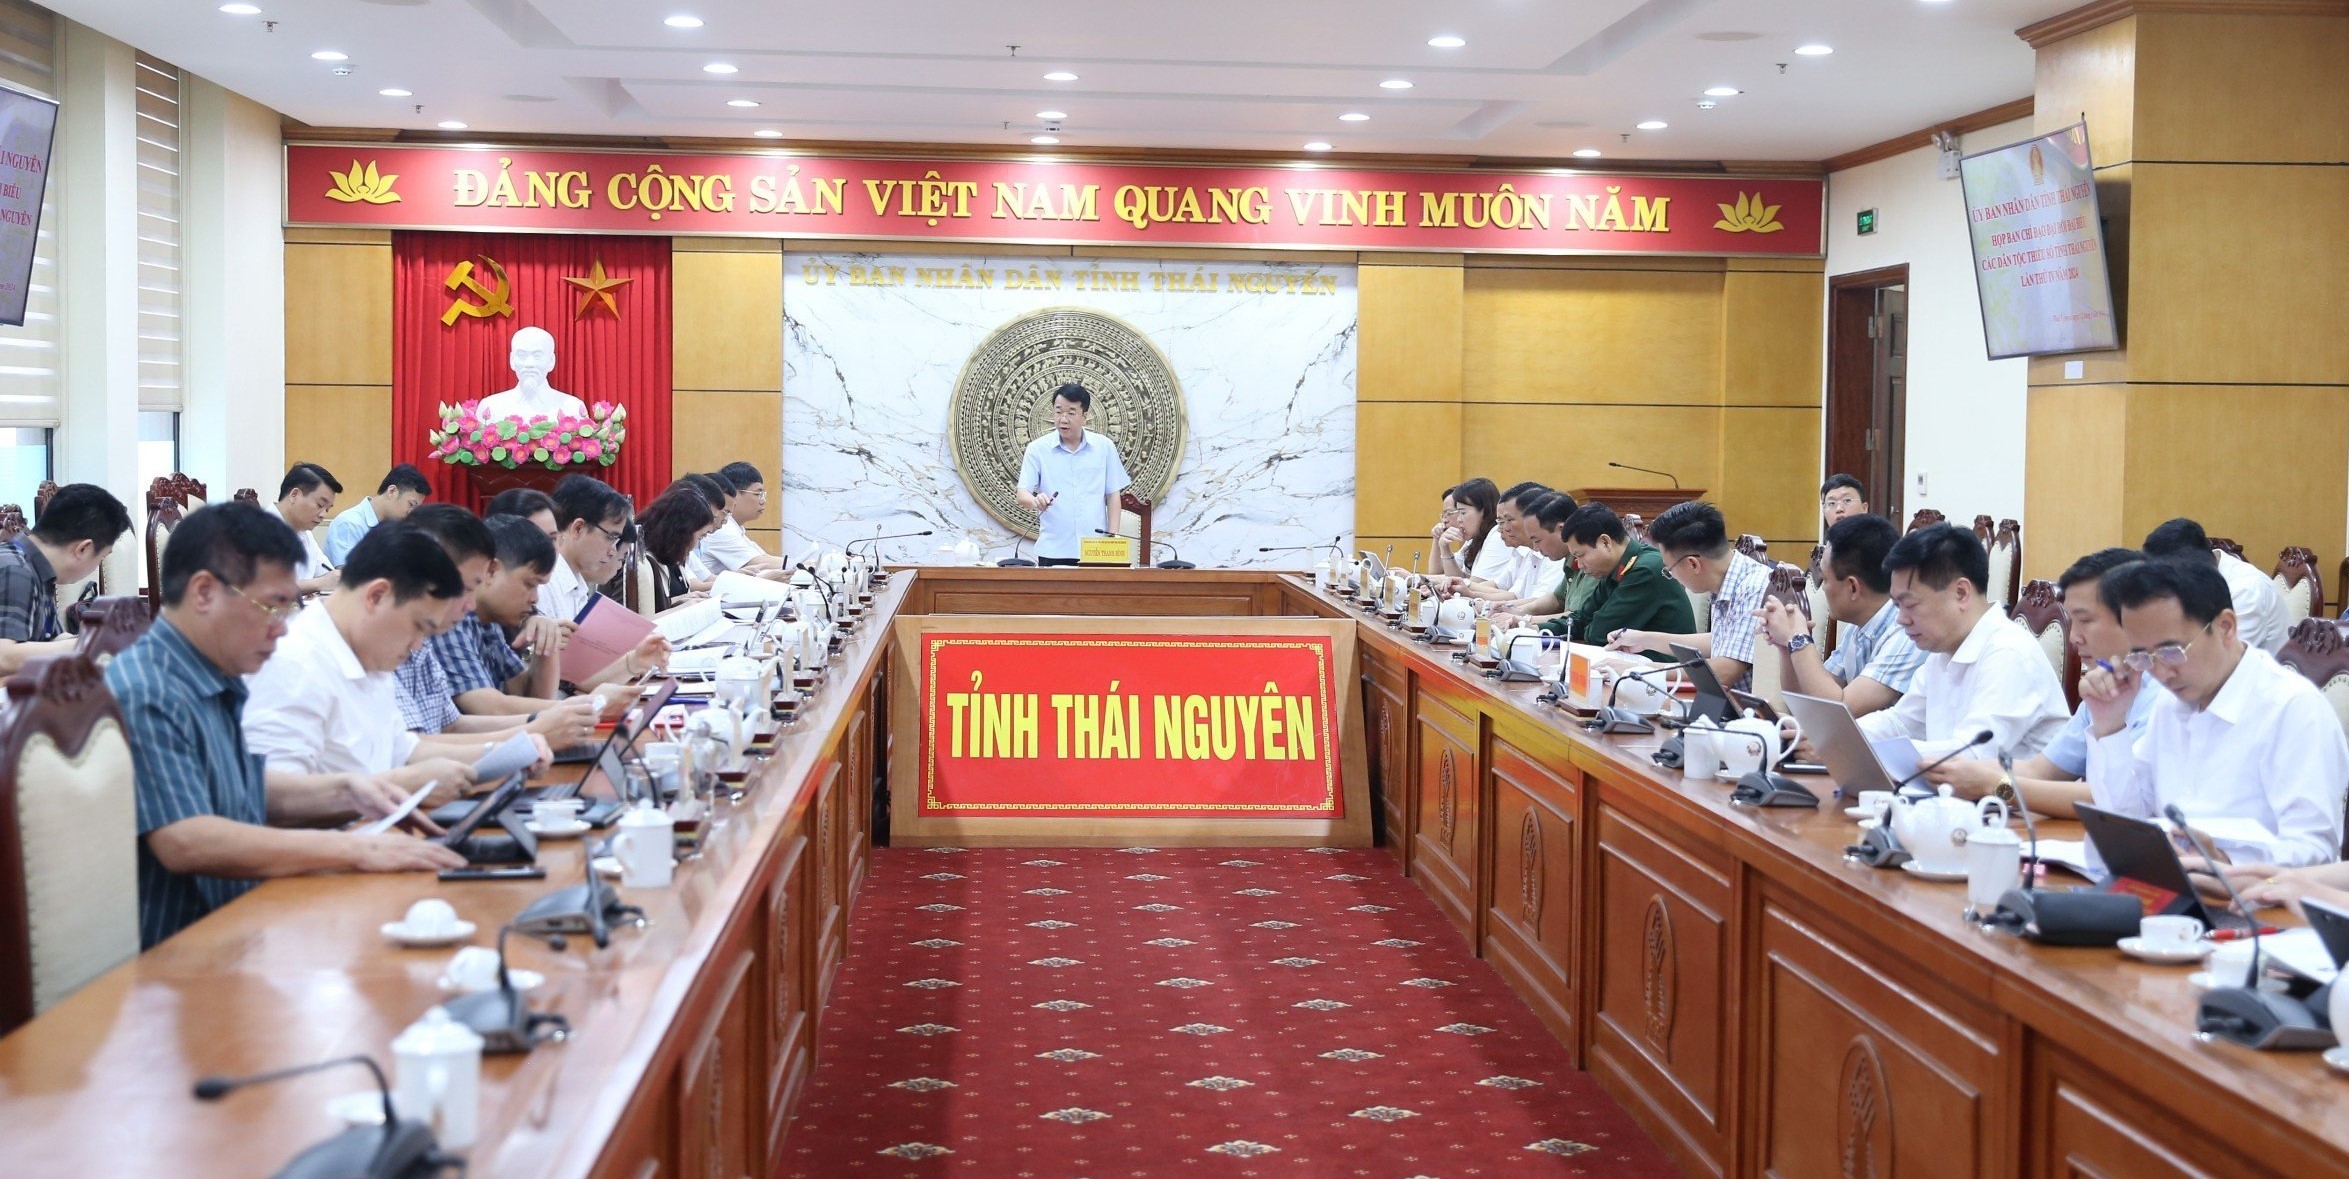 Đại hội đại biểu các dân tộc thiểu số tỉnh Thái Nguyên lần thứ IV năm 2024 được tổ chức trước ngày 30/11/2024